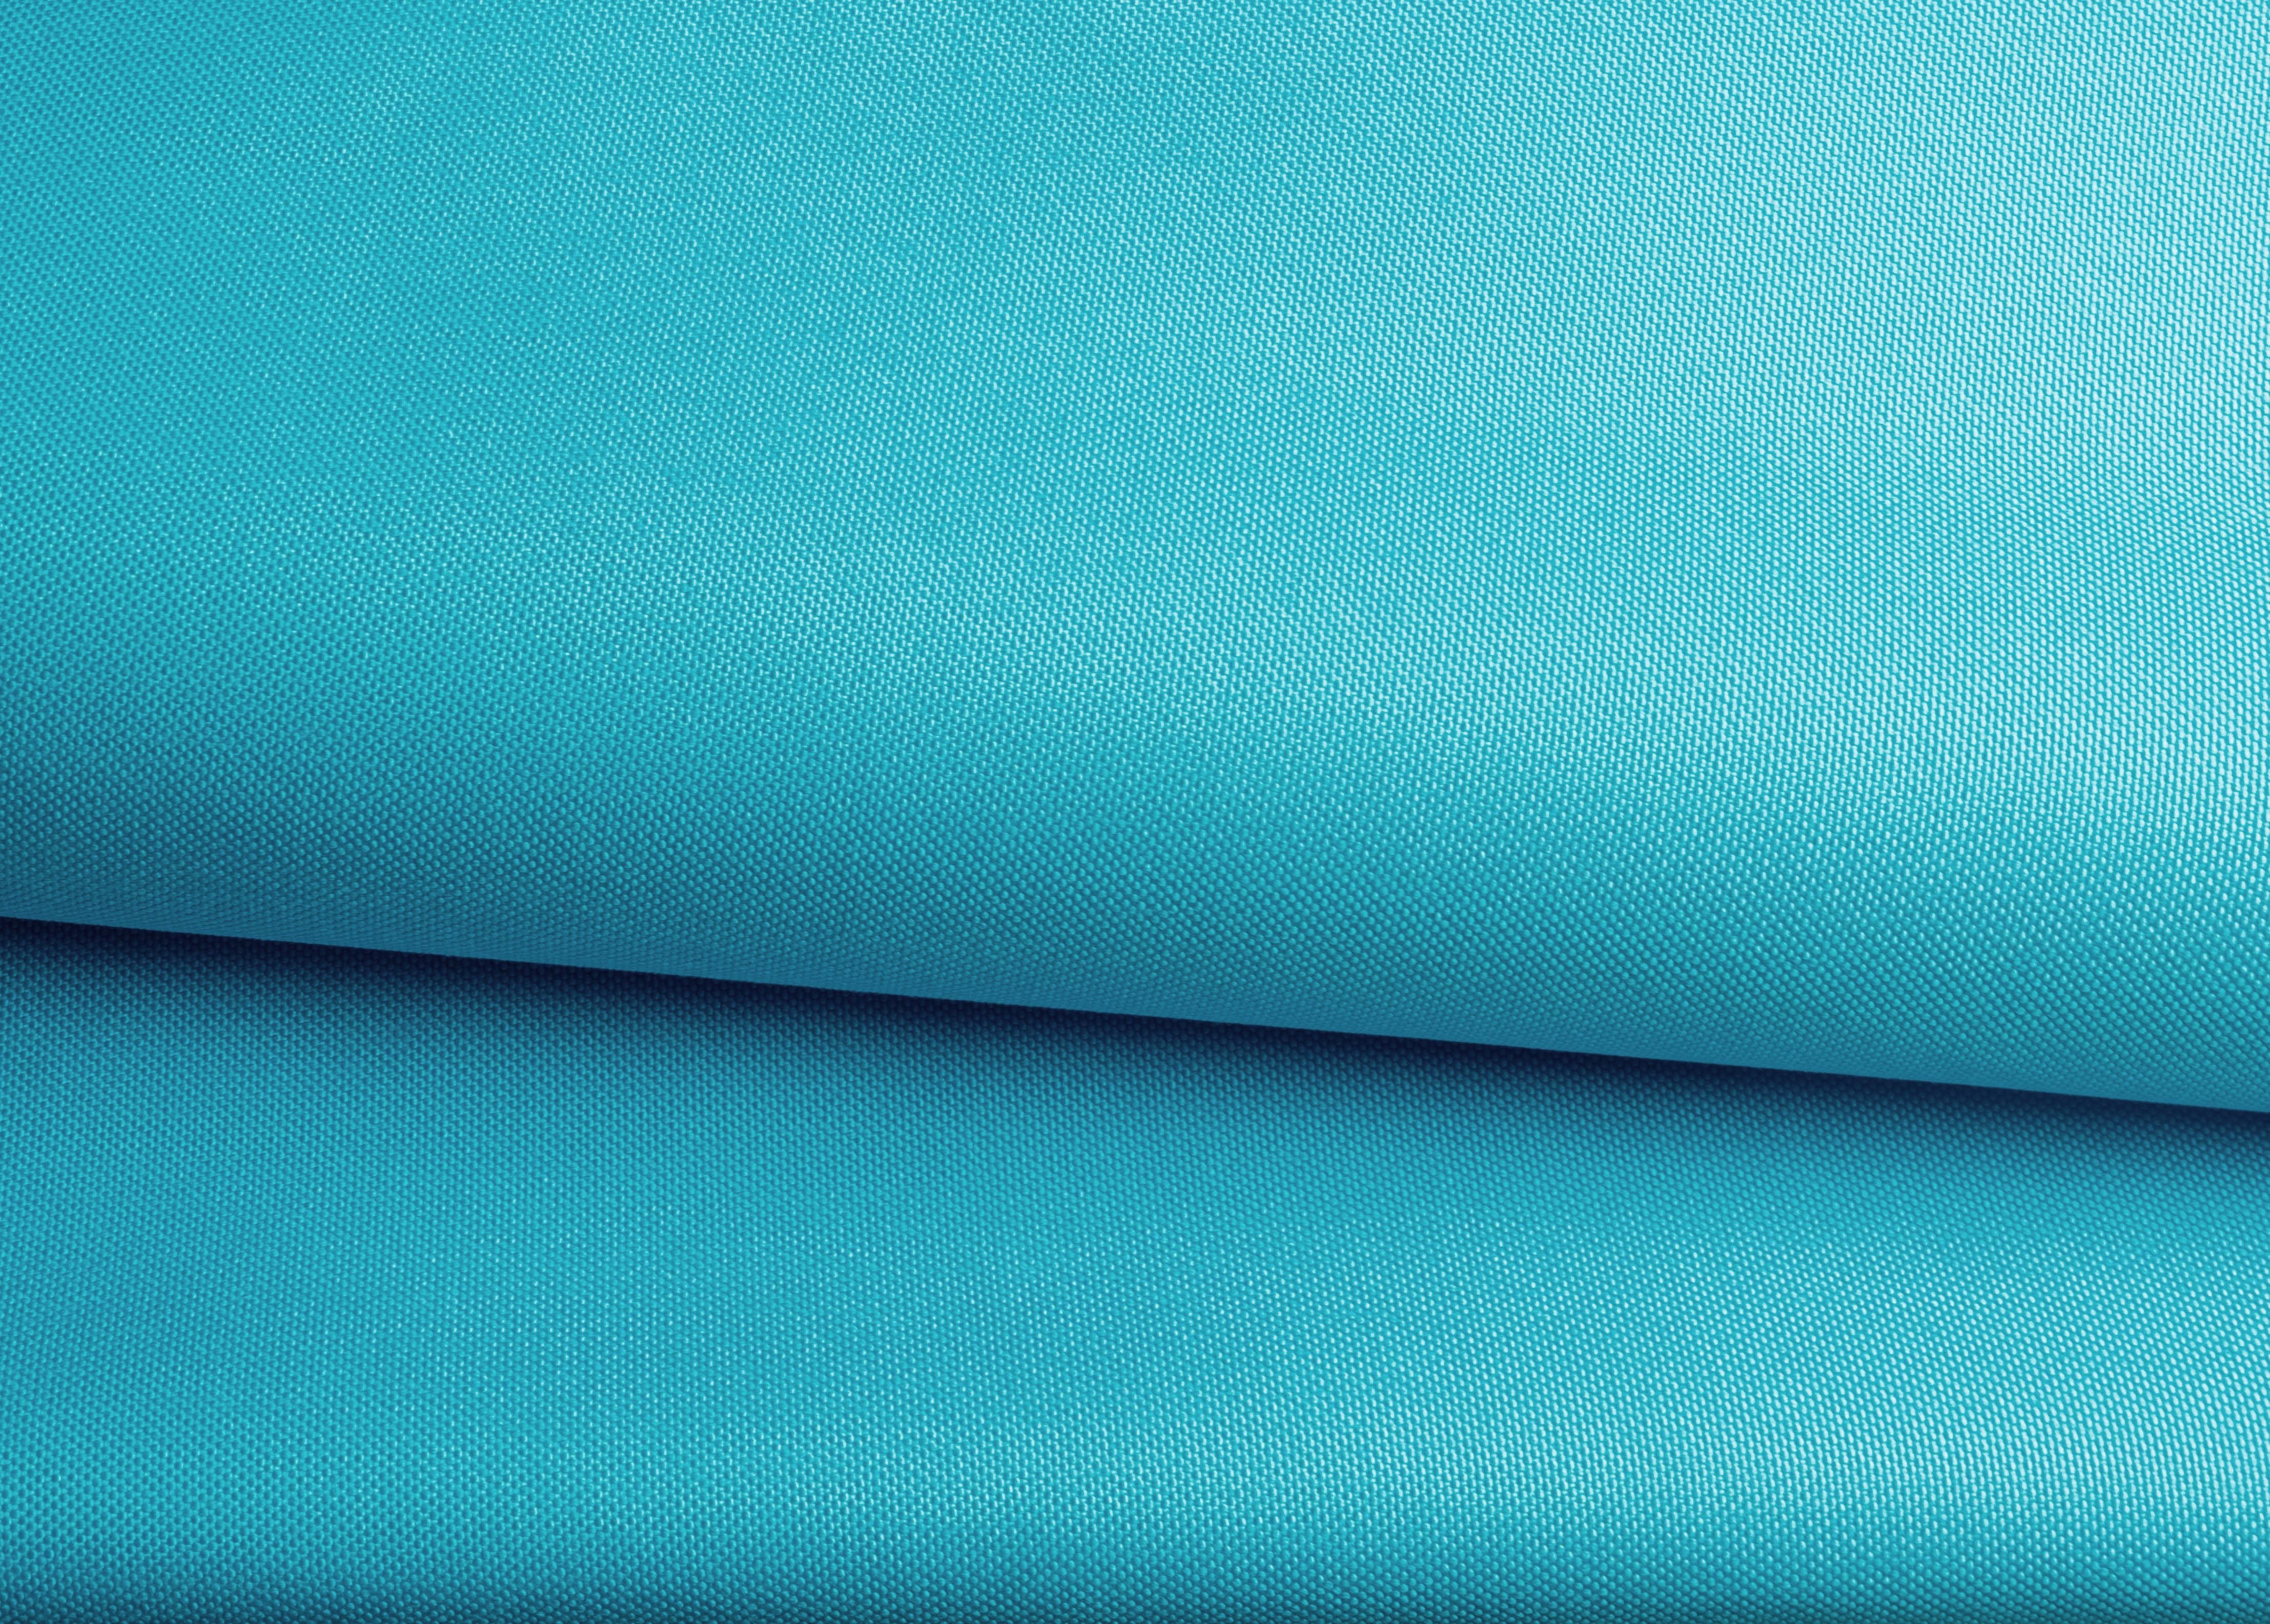 Sorrento Plain Aqua Blue Outdoor Fabric